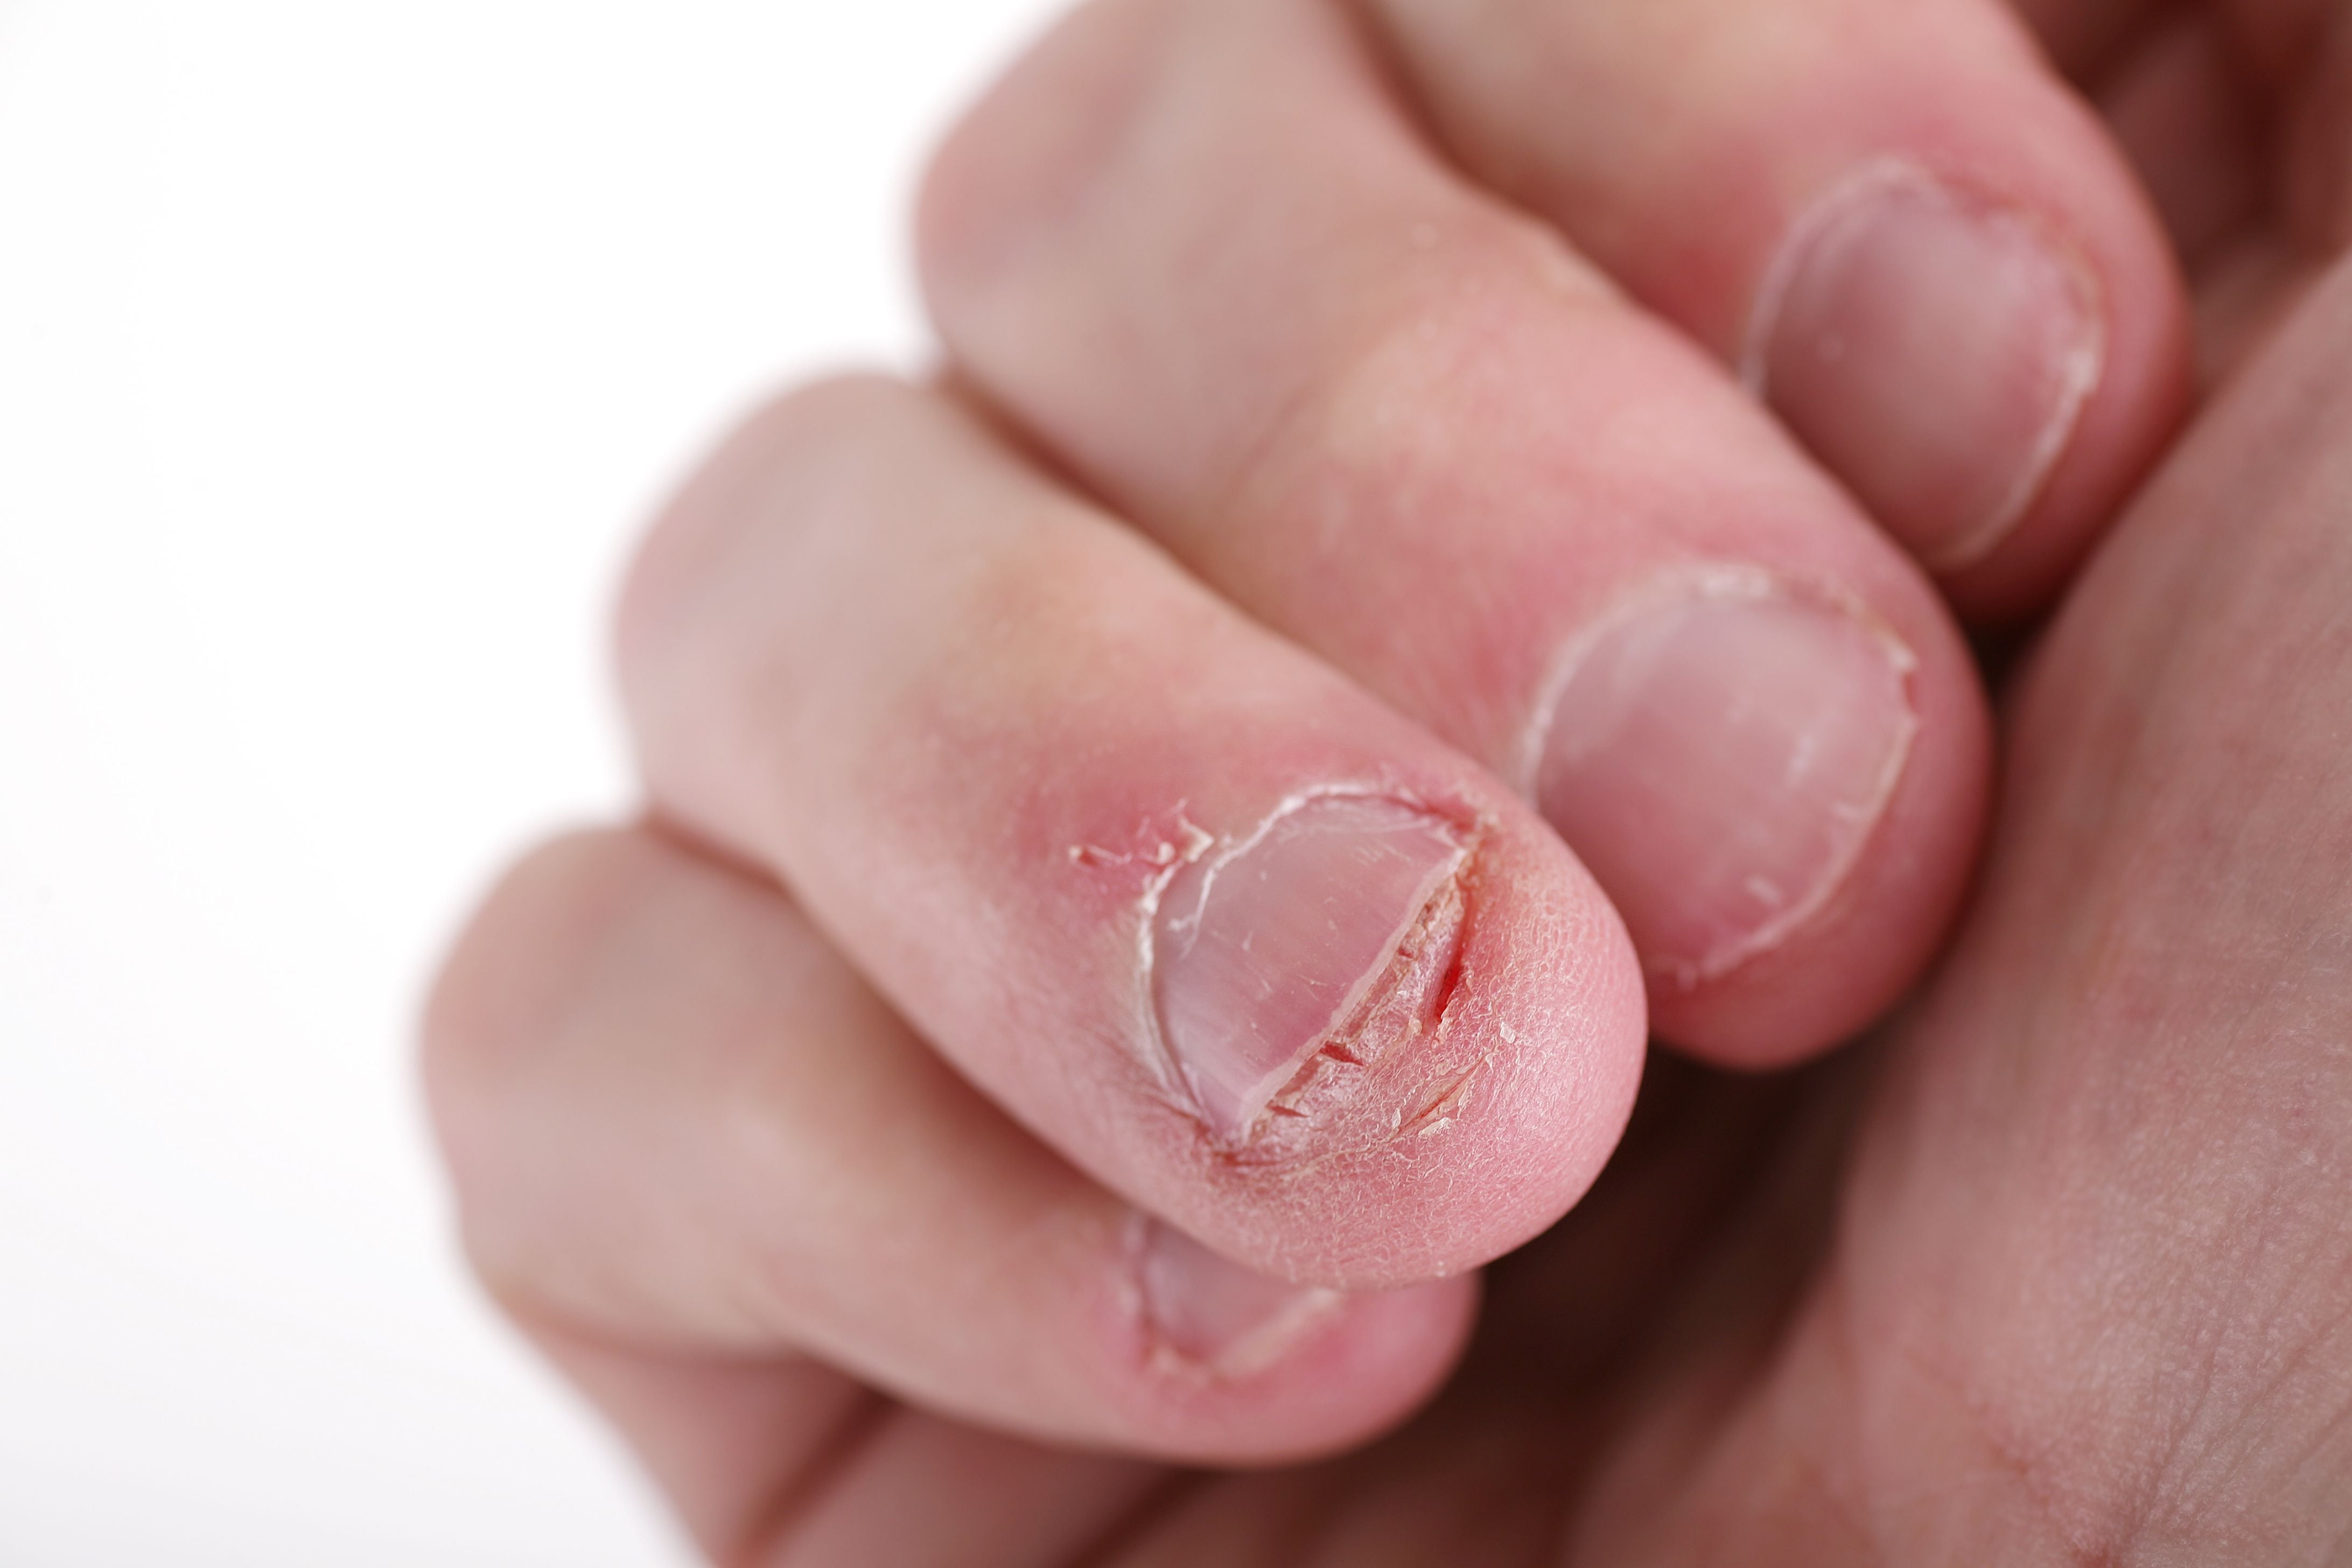 Las personas que se comían las uñas y dejaron de hacerlo tienen una forma distintiva que, en algunos casos, puede ser un indicio de una infección en las válvulas cardíacas
(Getty Images)